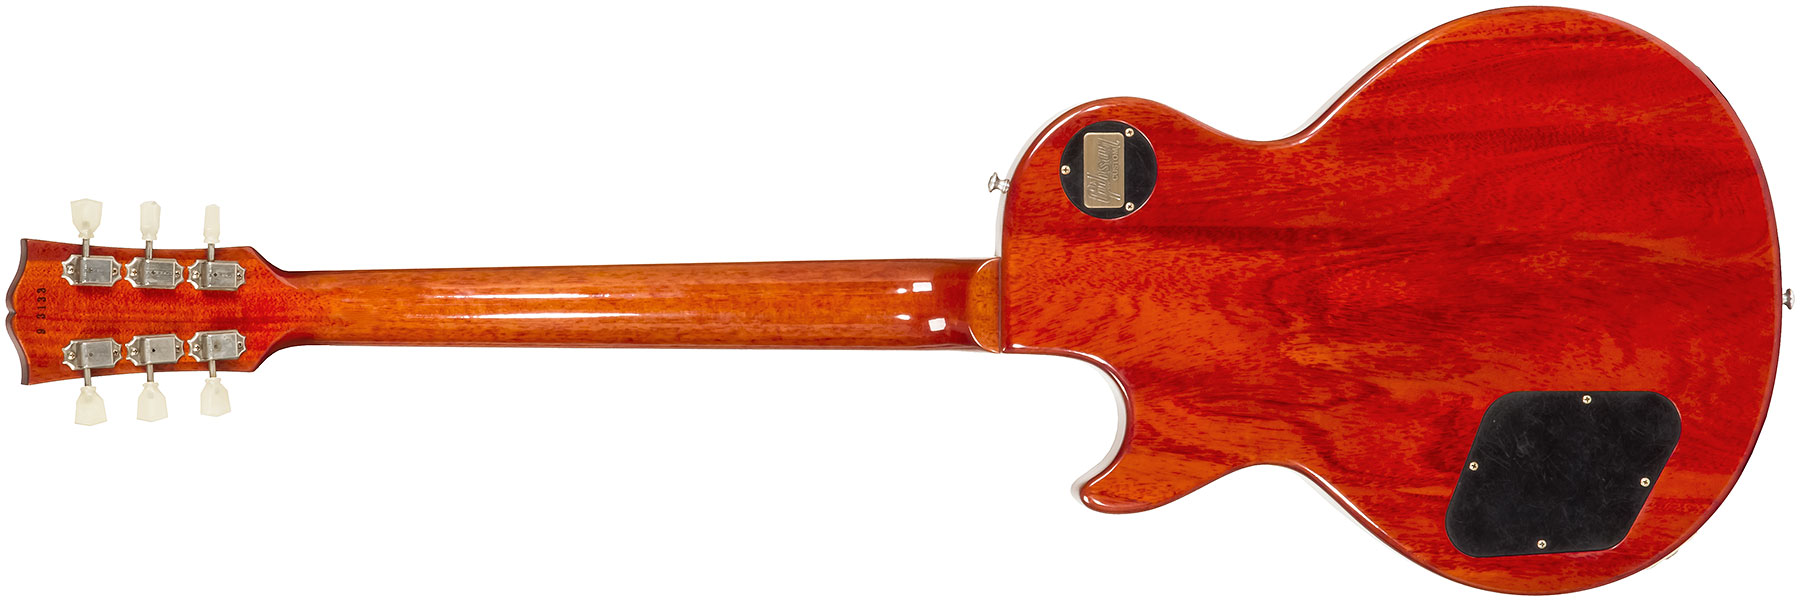 Gibson Custom Shop M2m Les Paul Standard 1959 2h Ht Rw #93133 - Vos Amber Burst - Guitare Électrique Single Cut - Variation 1